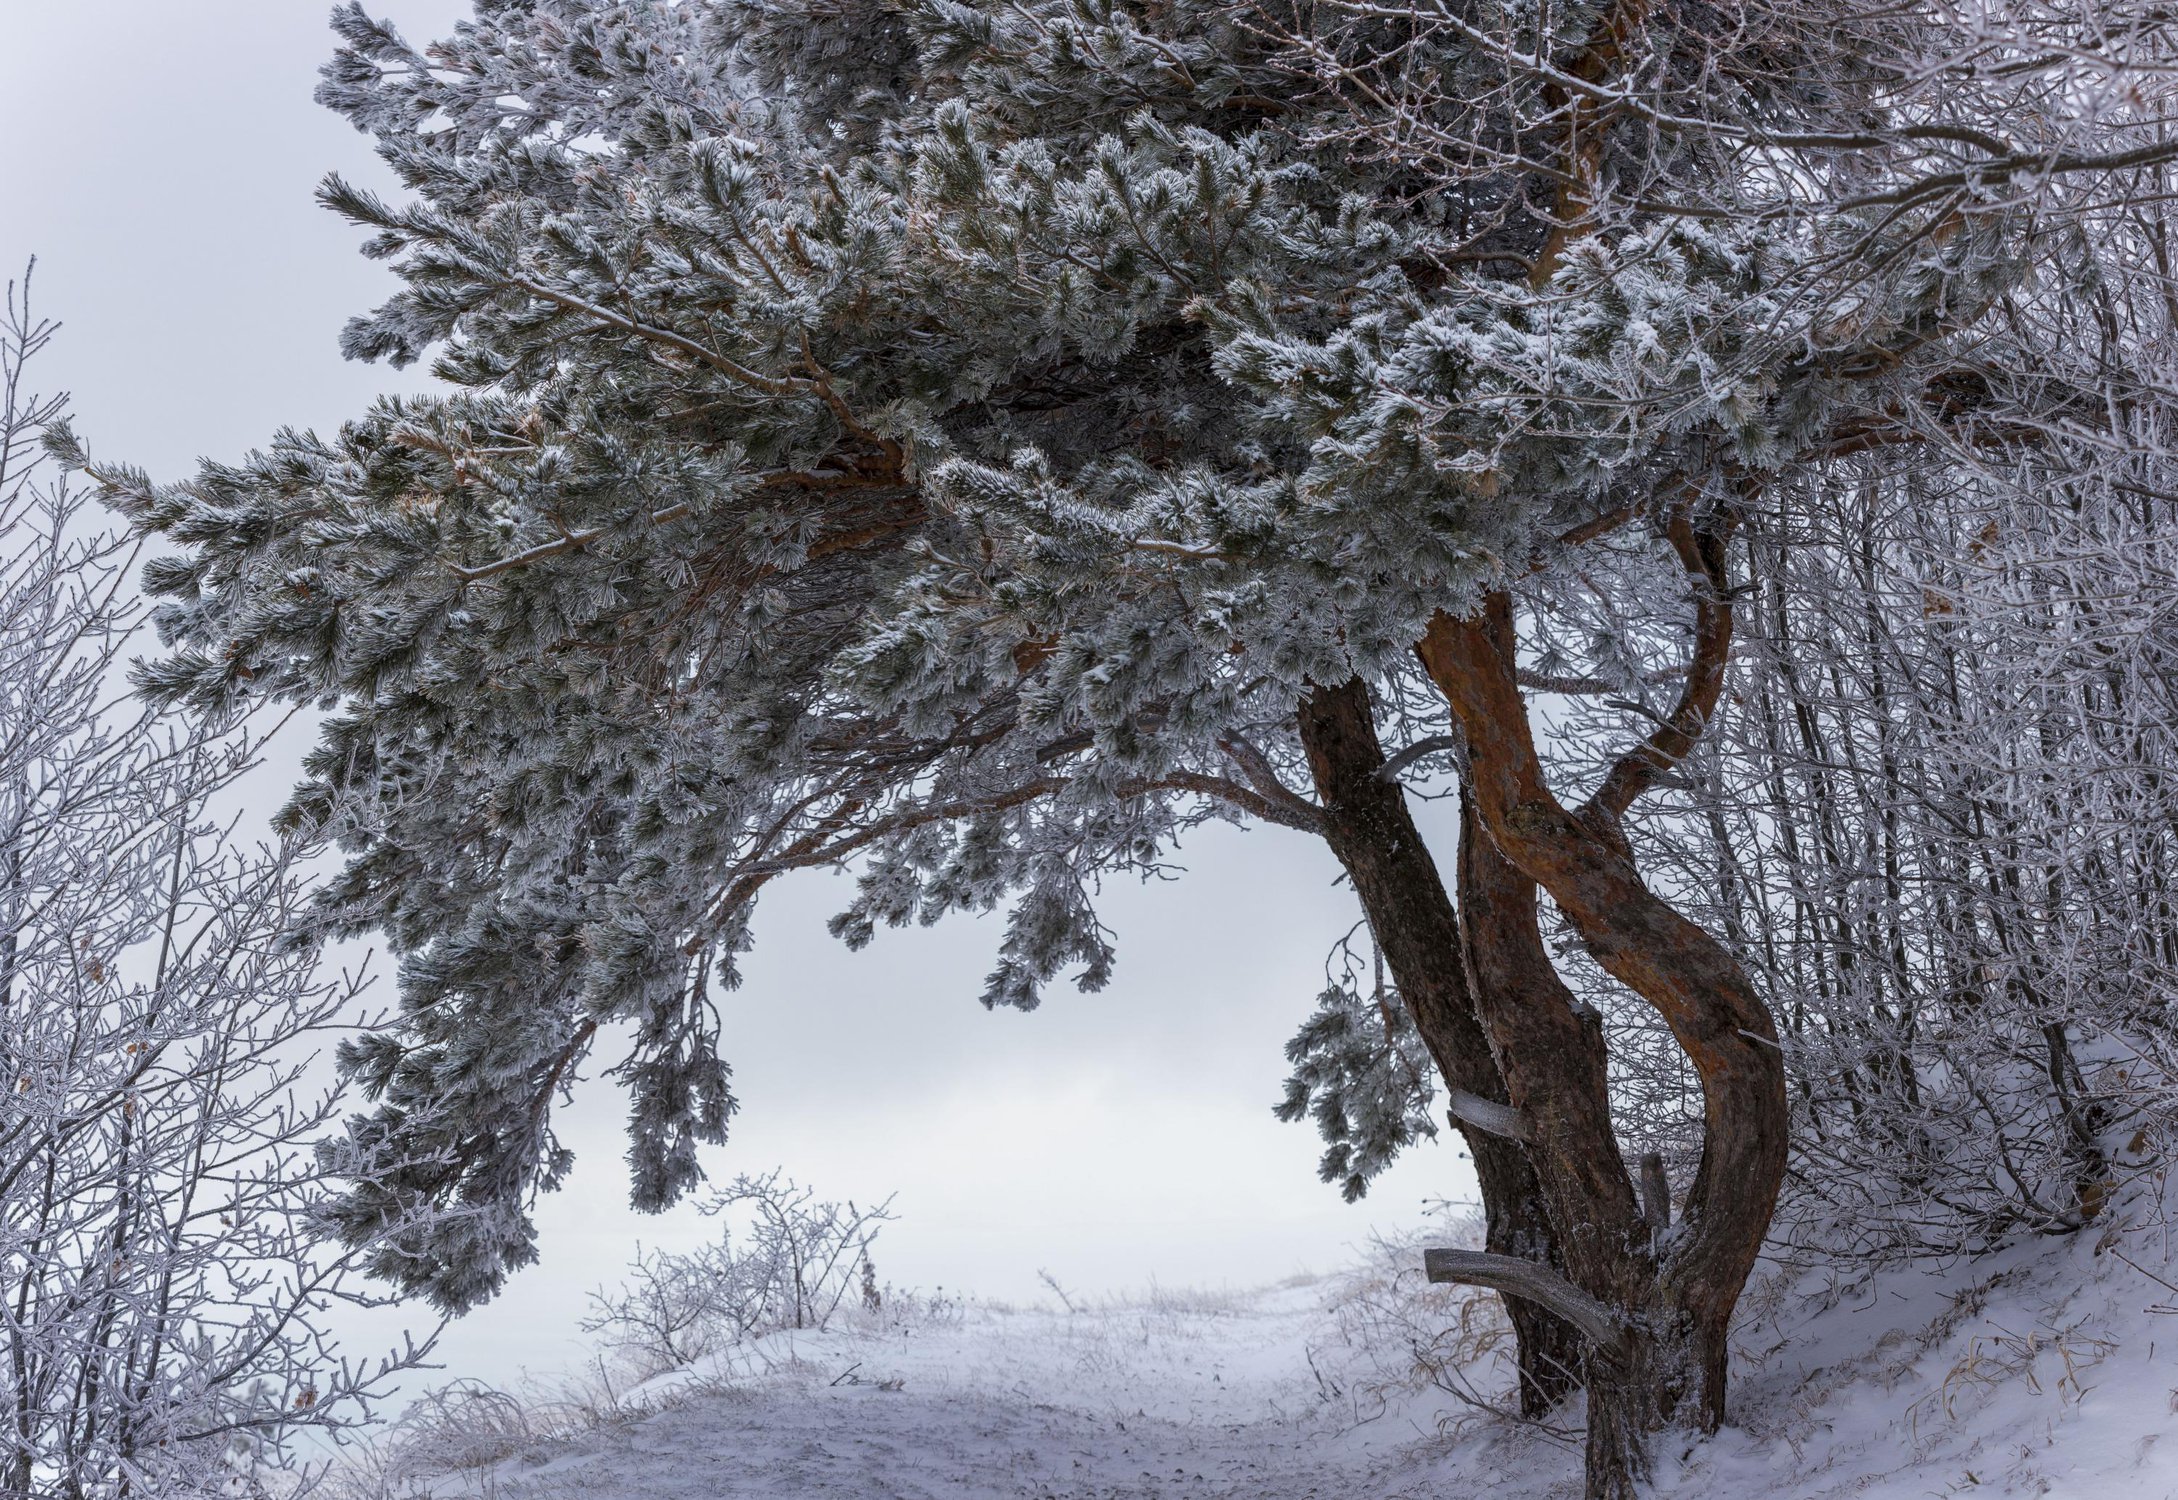 Снегопад на Сосновой горке, Ставропольский край, зима 2020 г